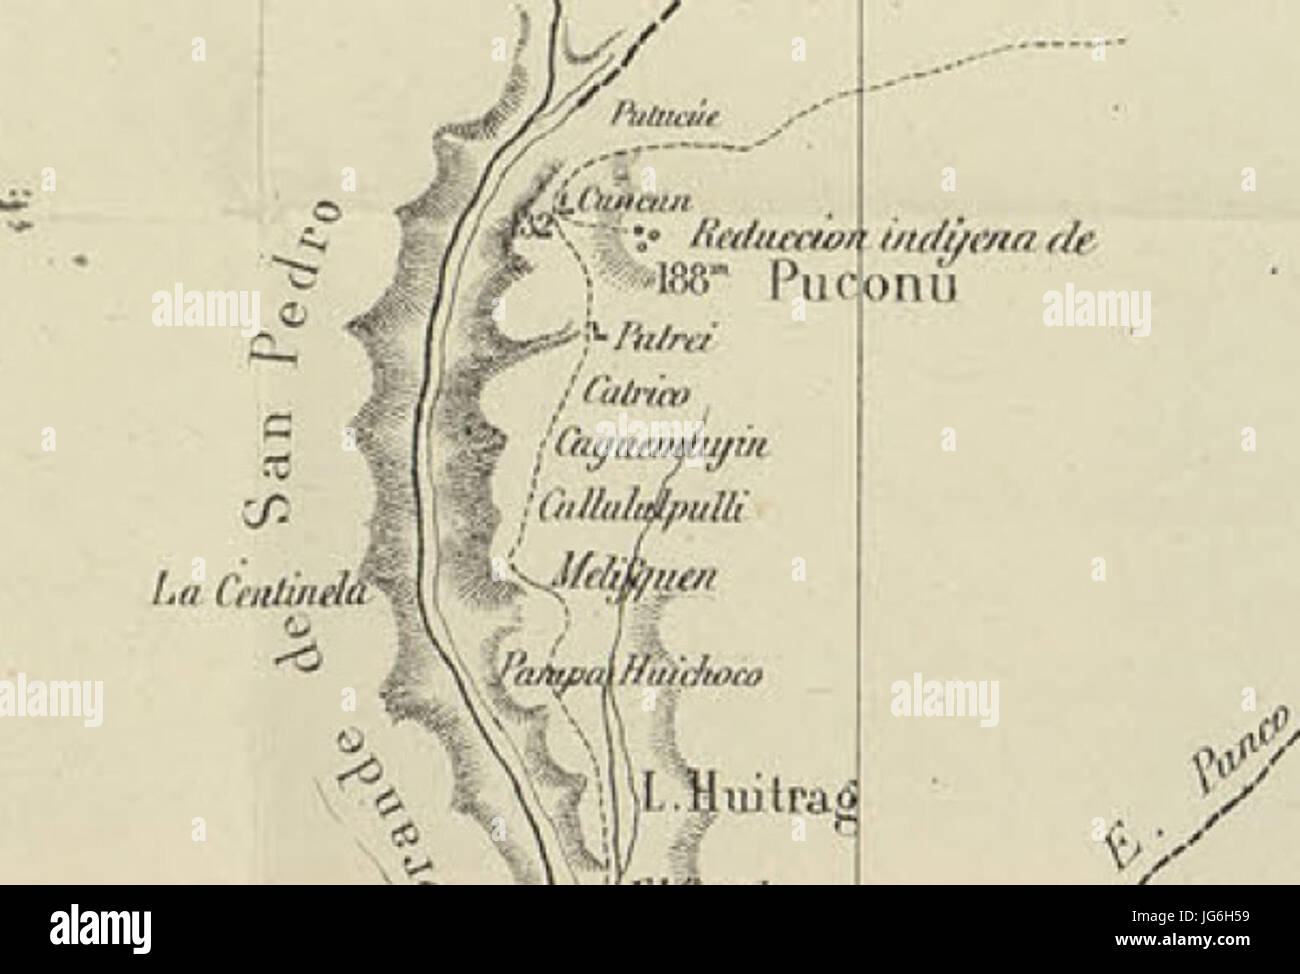 Reducción Indigena de Puconu en el Mapa de la Expedicion de Francisco Vidal Gormaz Stock Photo